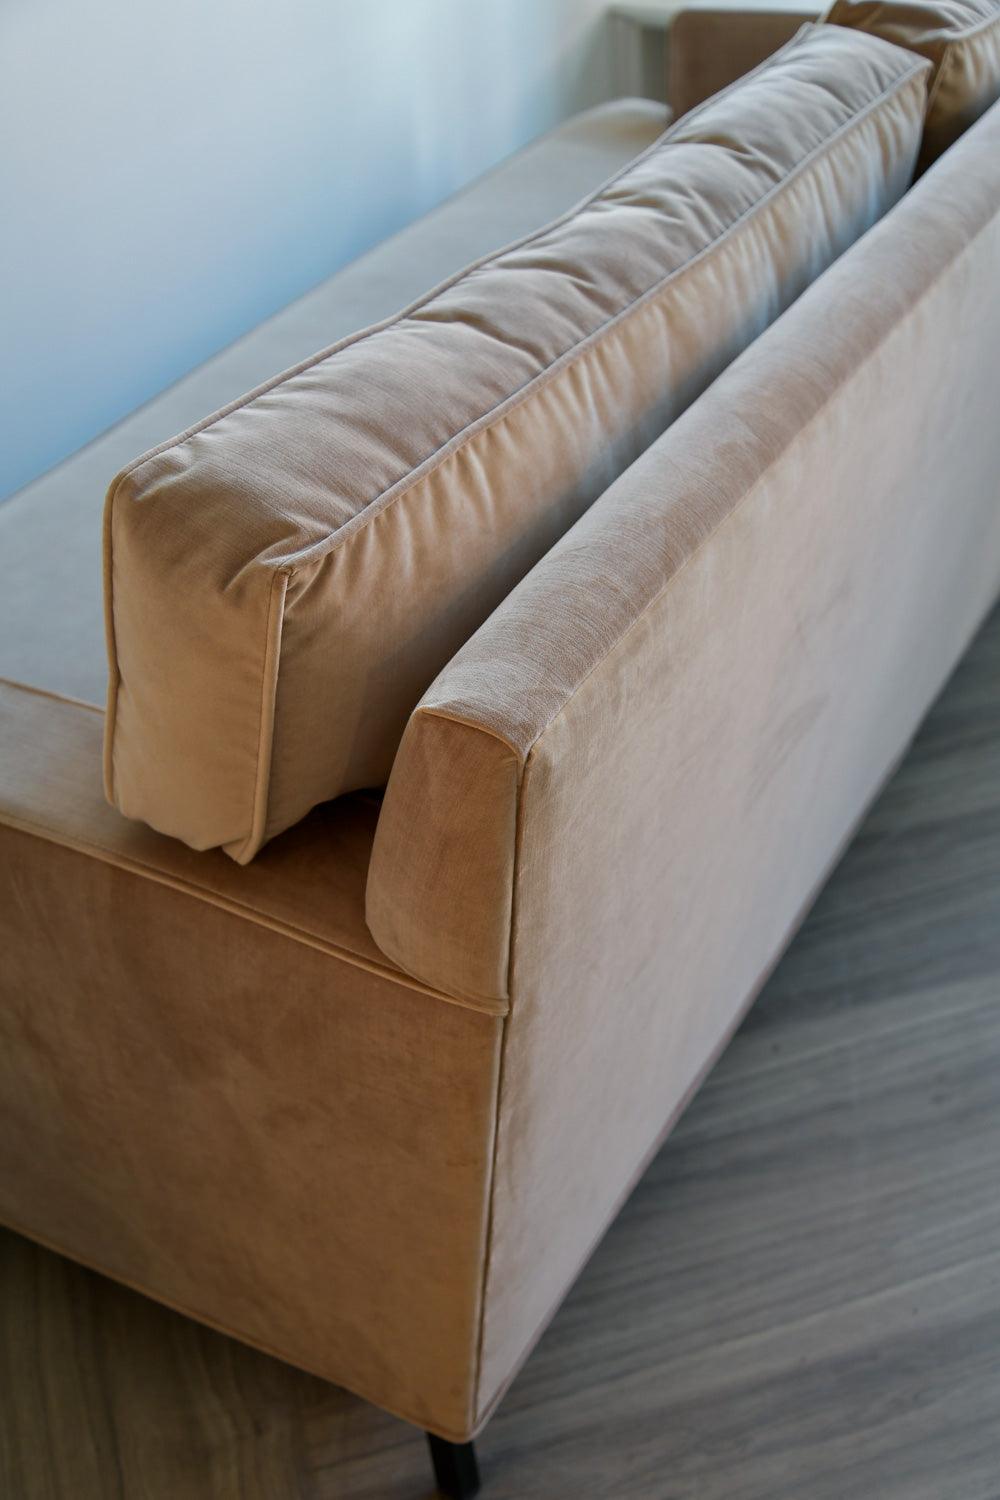 Soho II Sofa - Reimagine Designs - new, sofa, sofas